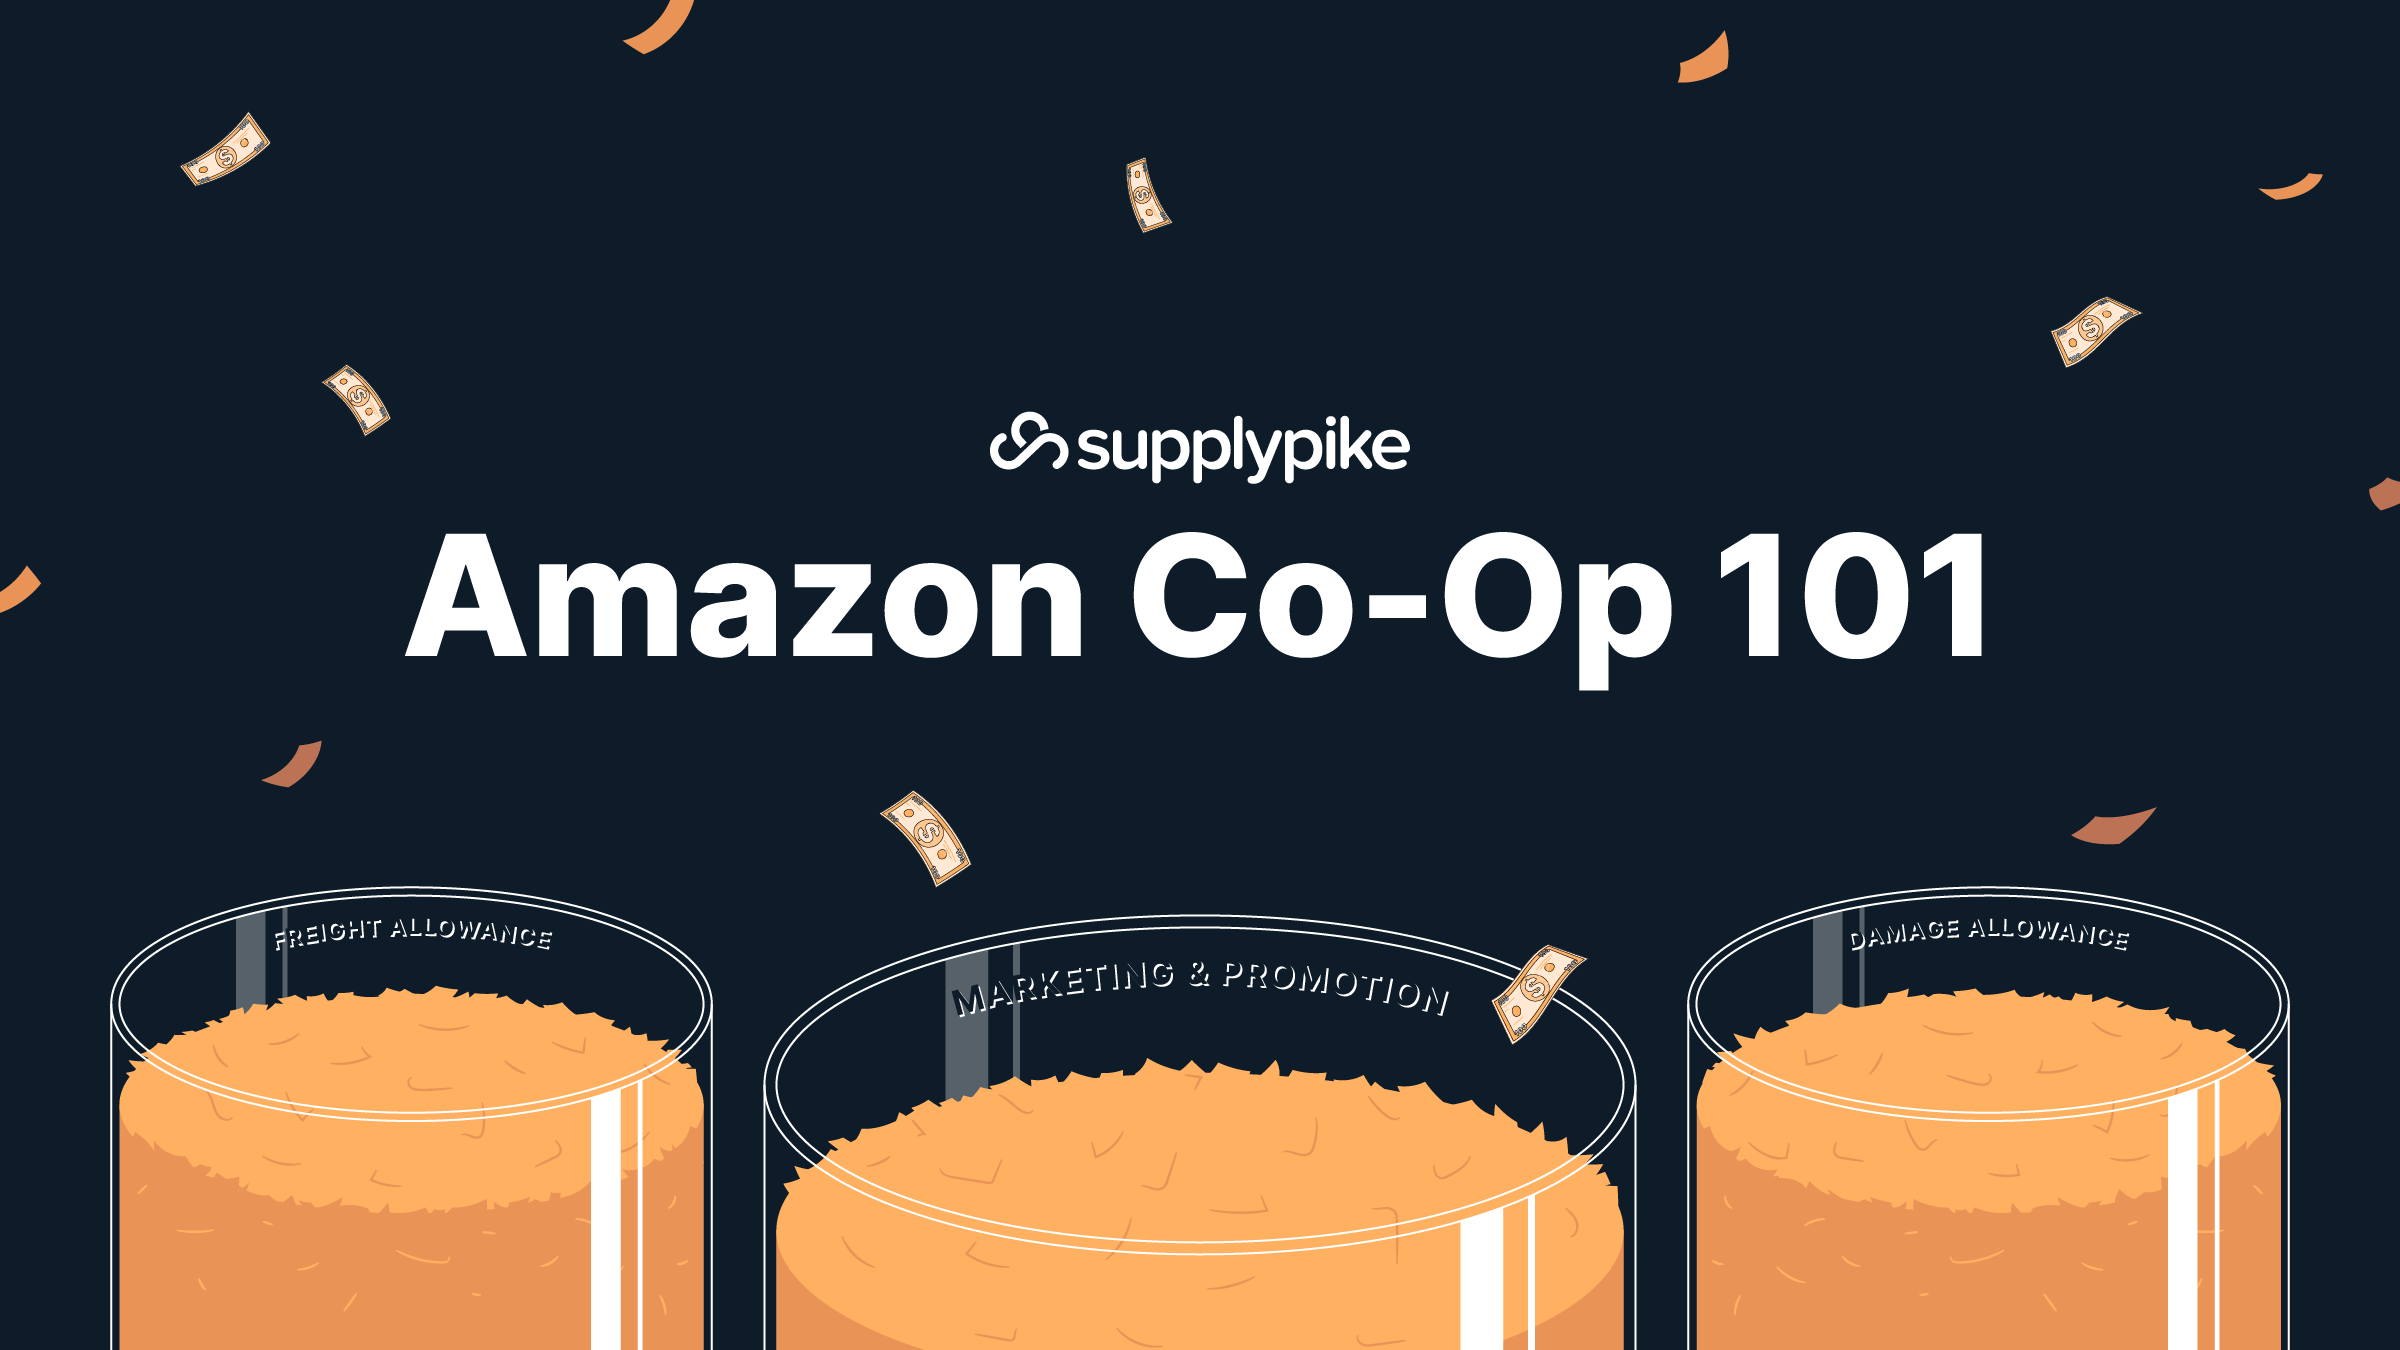 Amazon Co-Op 101